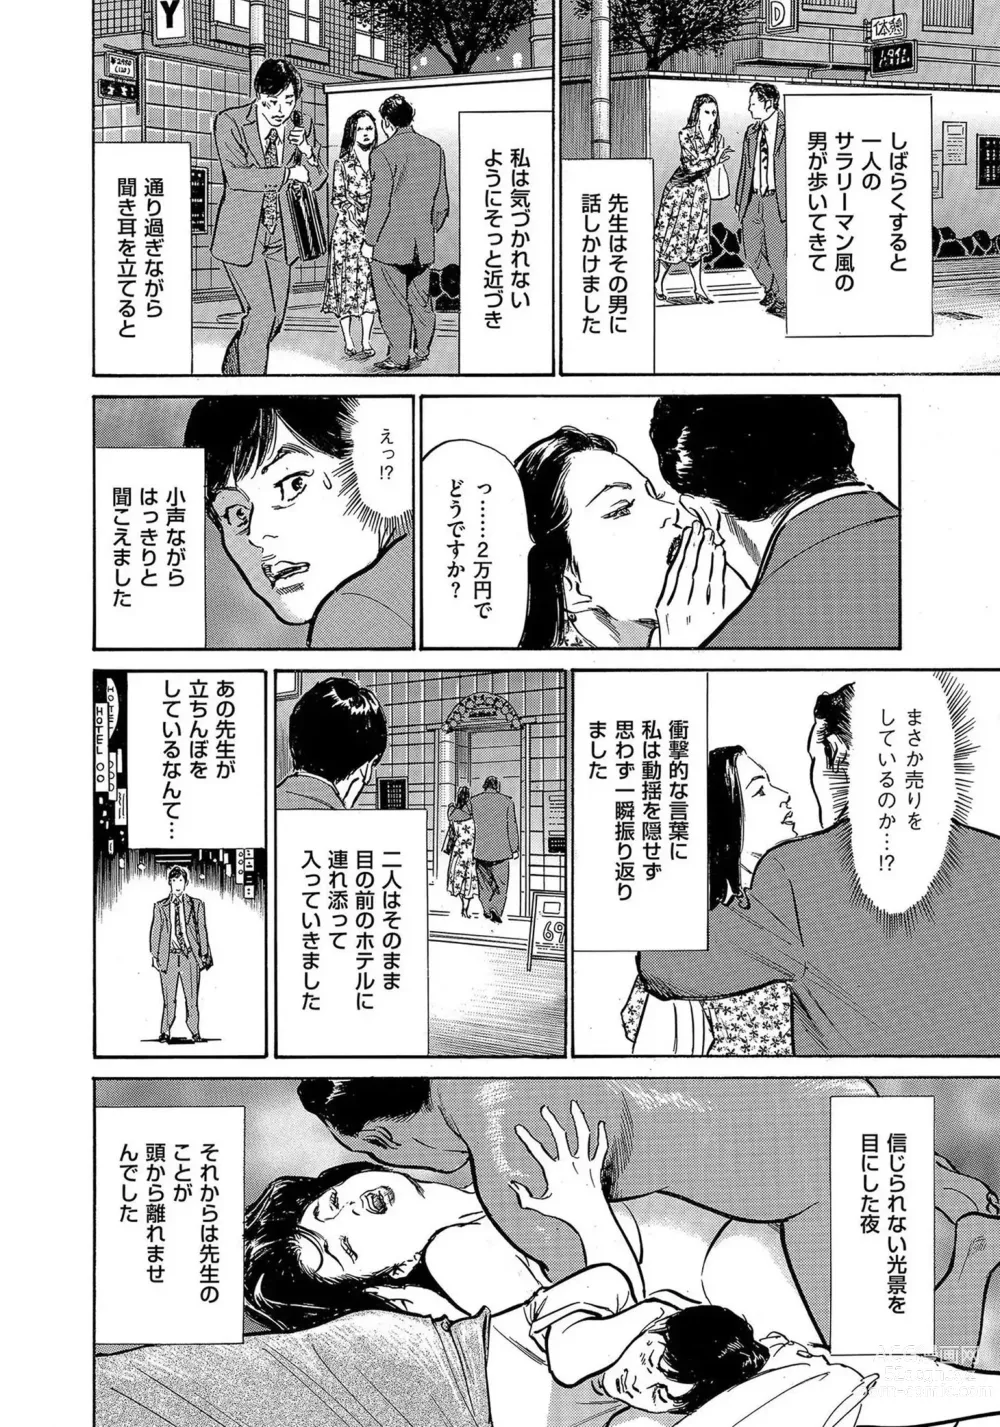 Page 7 of manga Saikou ni Toroketa Honki de Honto no Hanashi 16 episodes